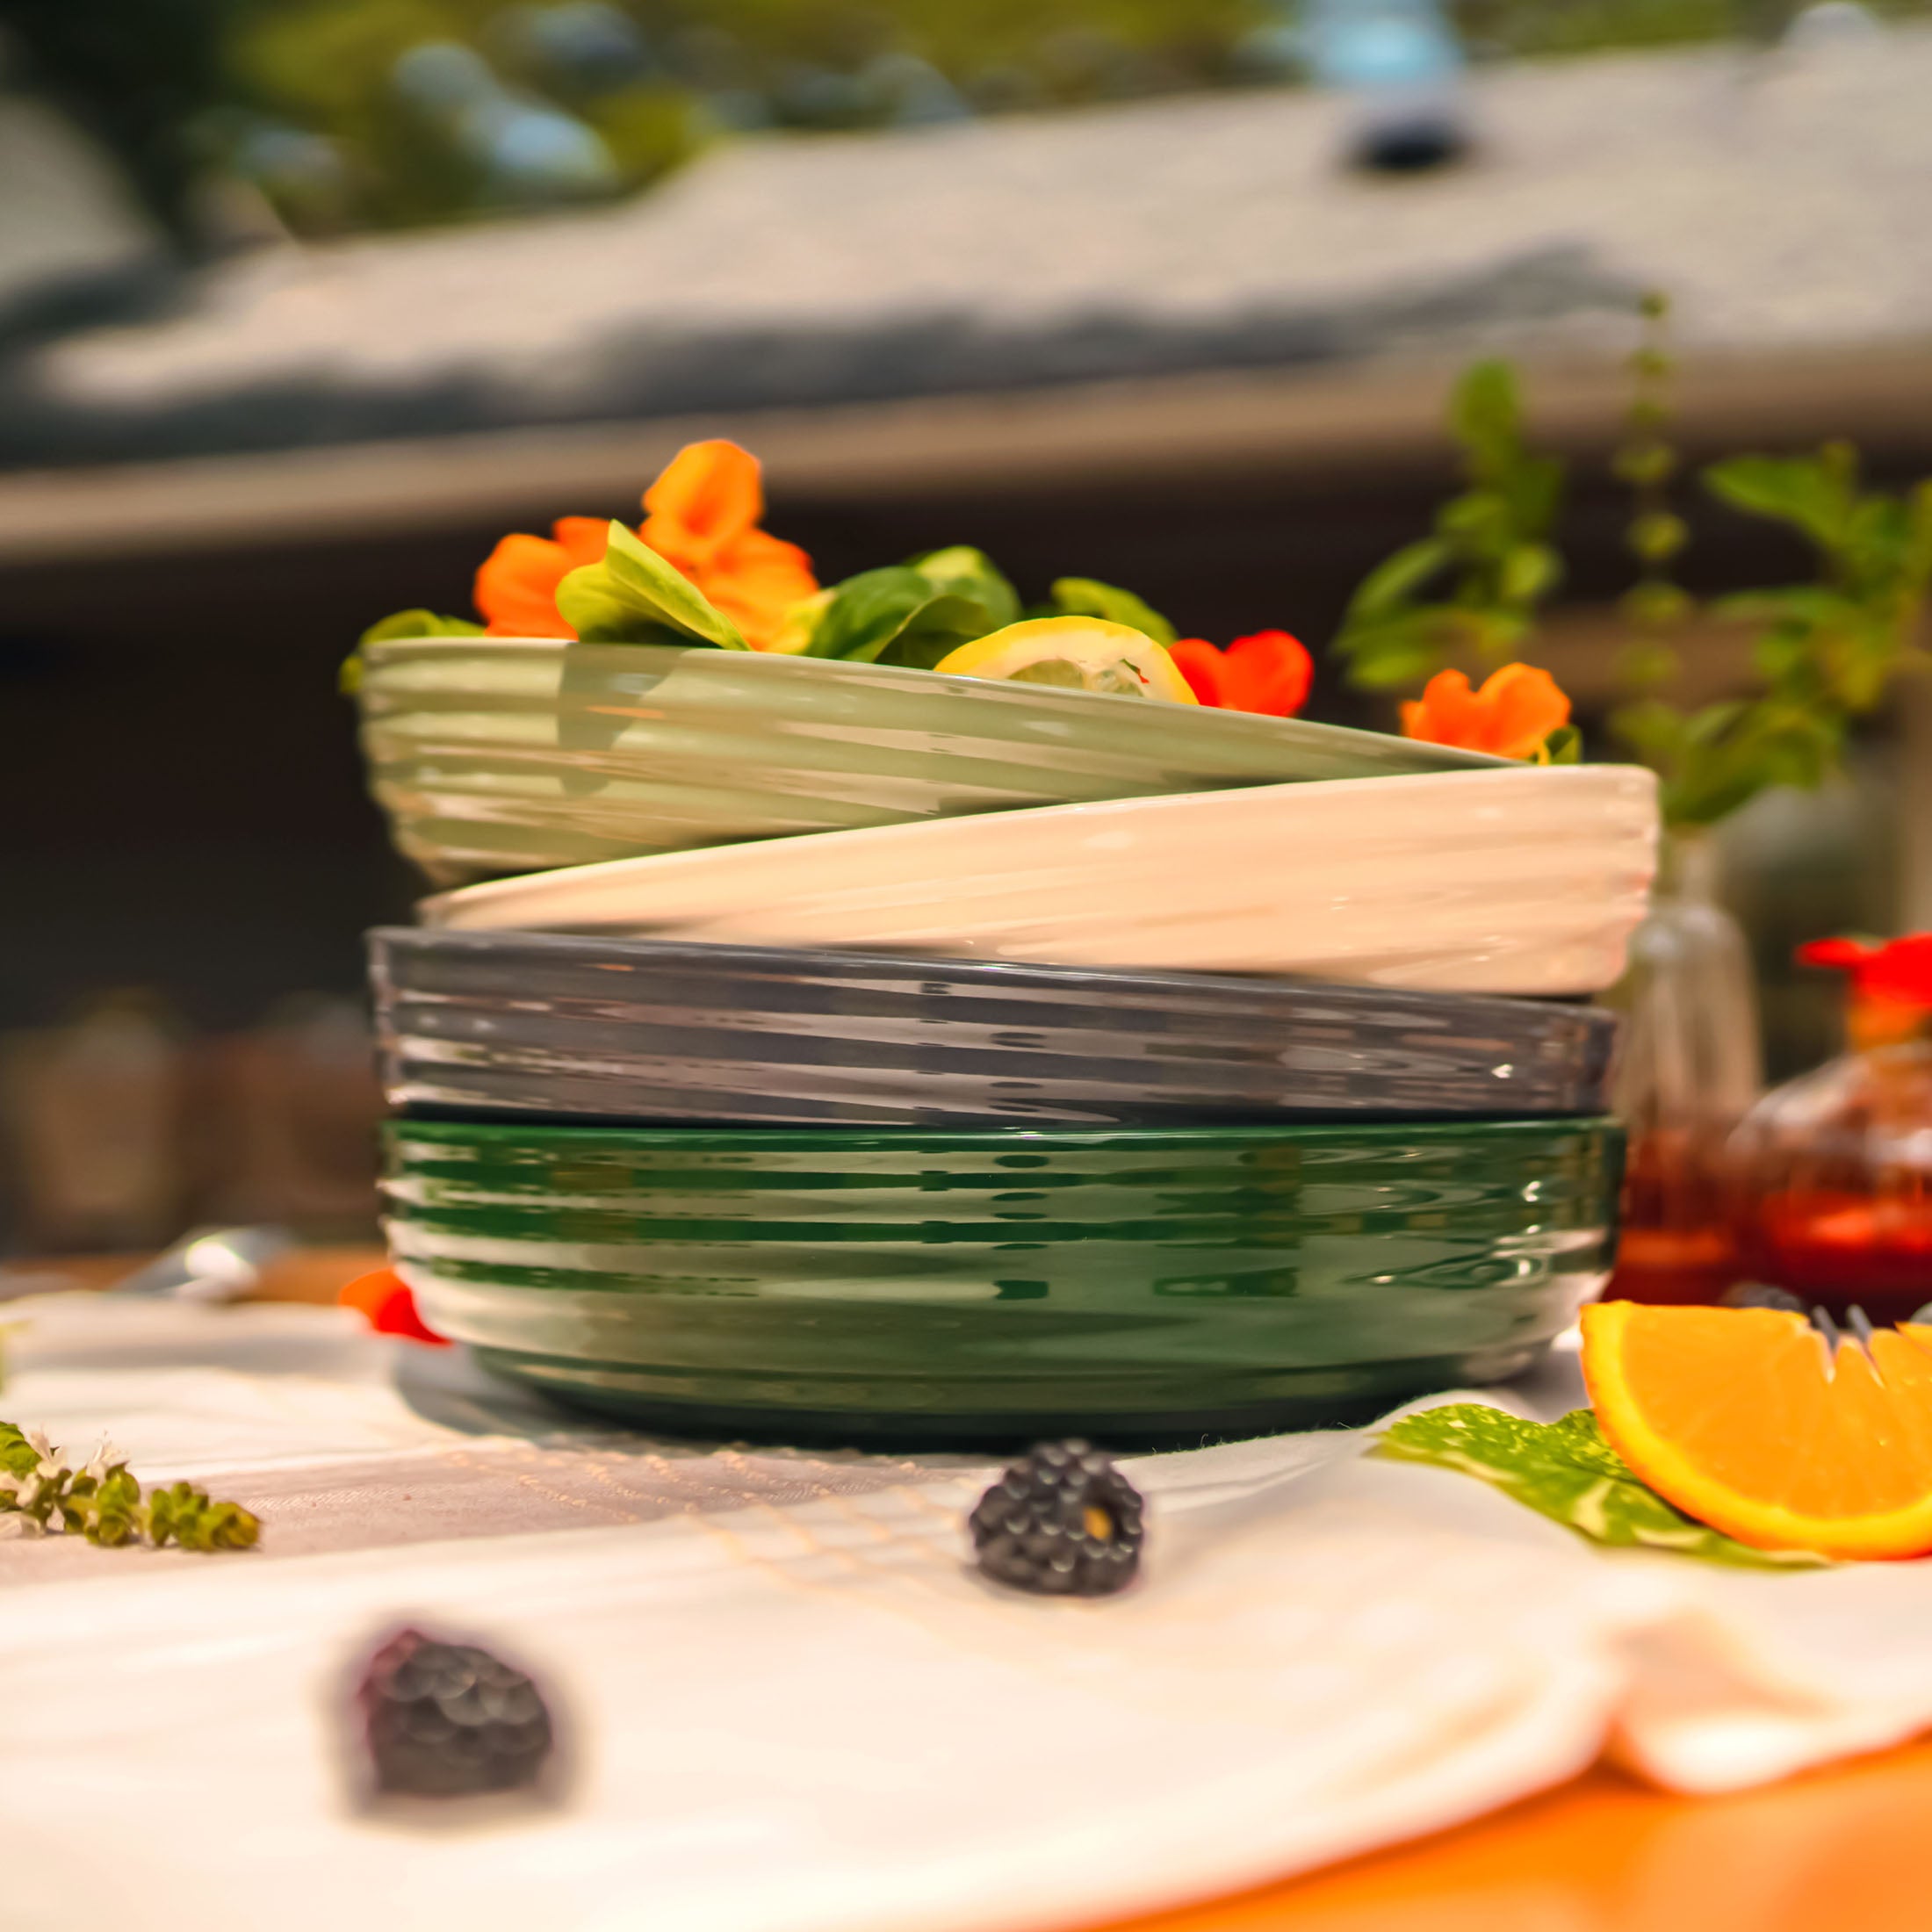 Vego Salad Serving Bowl - 2 Pack